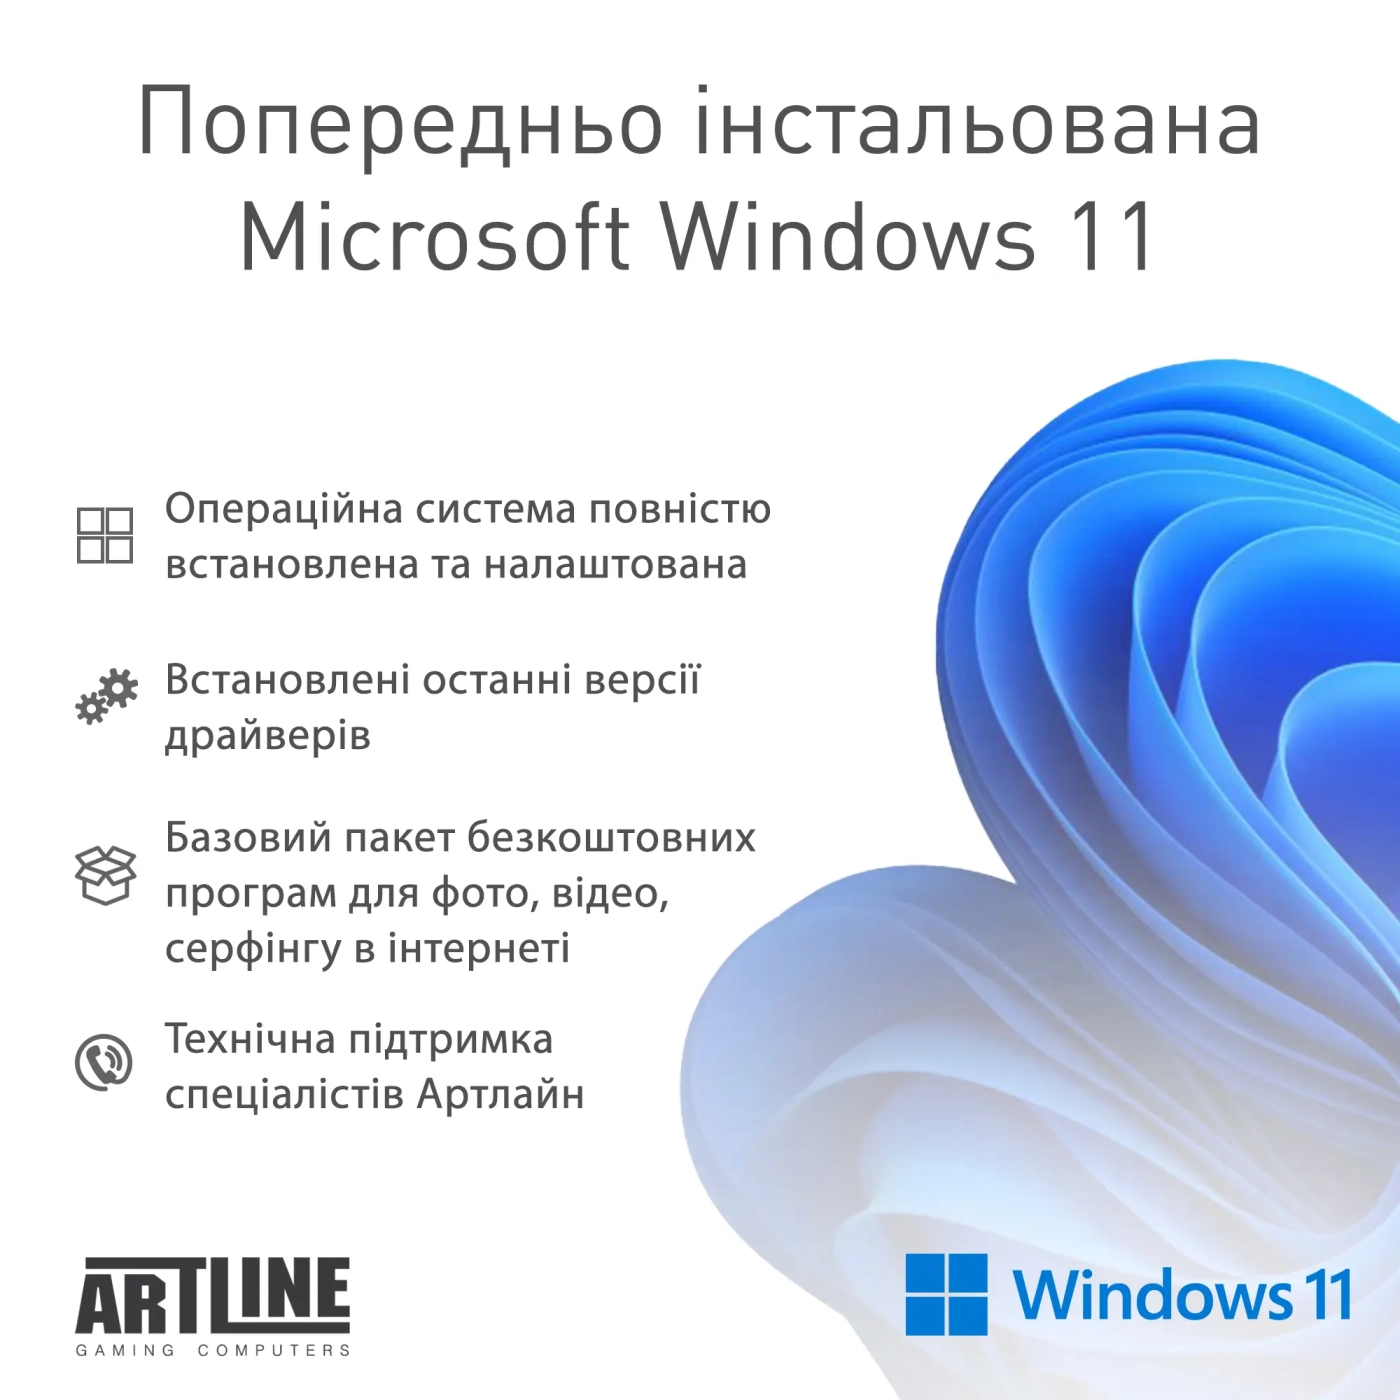 Купить Компьютер ARTLINE Gaming Y60 Windows 11 Home (Y60v19) - фото 9